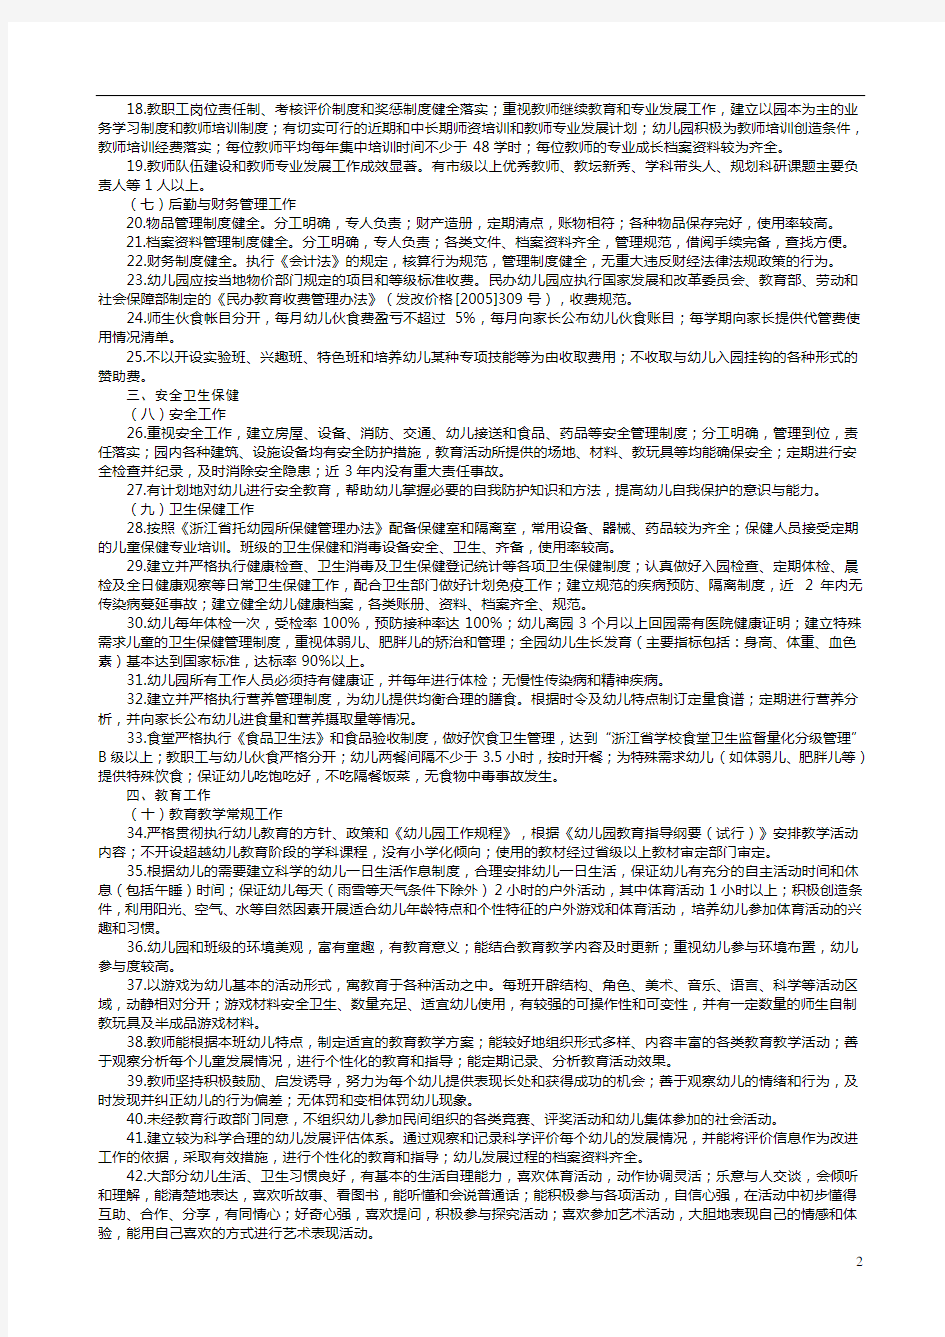 浙江省幼儿园等级评定标准(试行)(1)